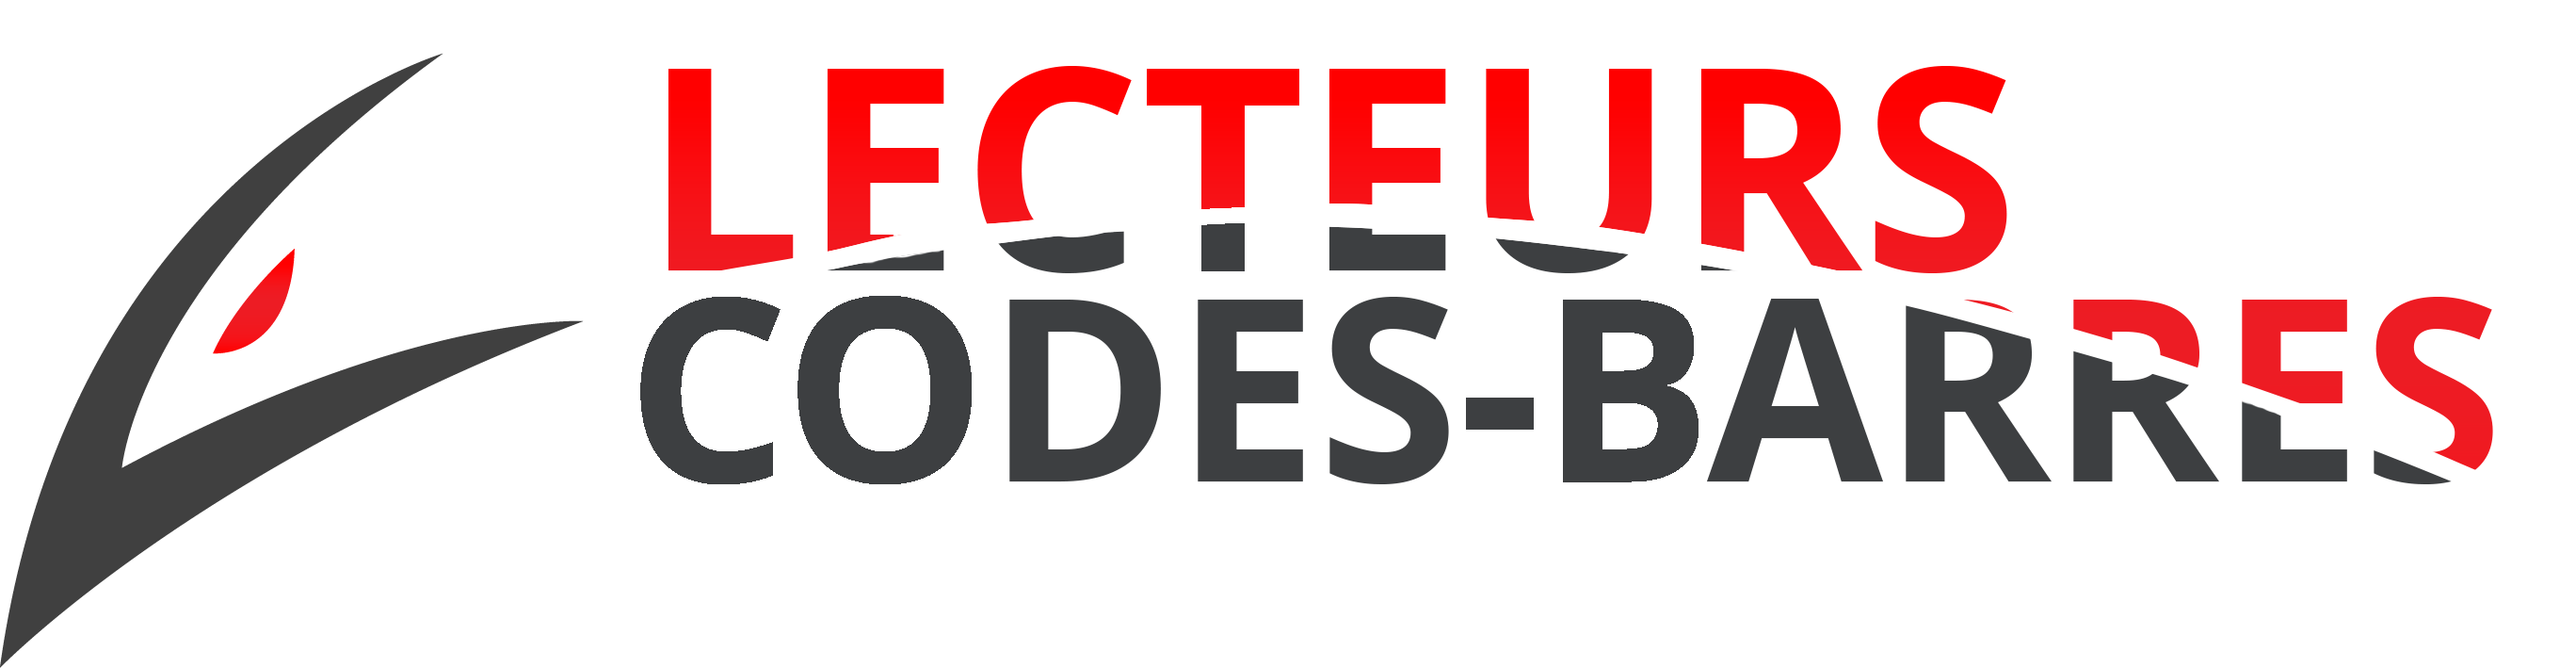 logo lecteurs codes-barres